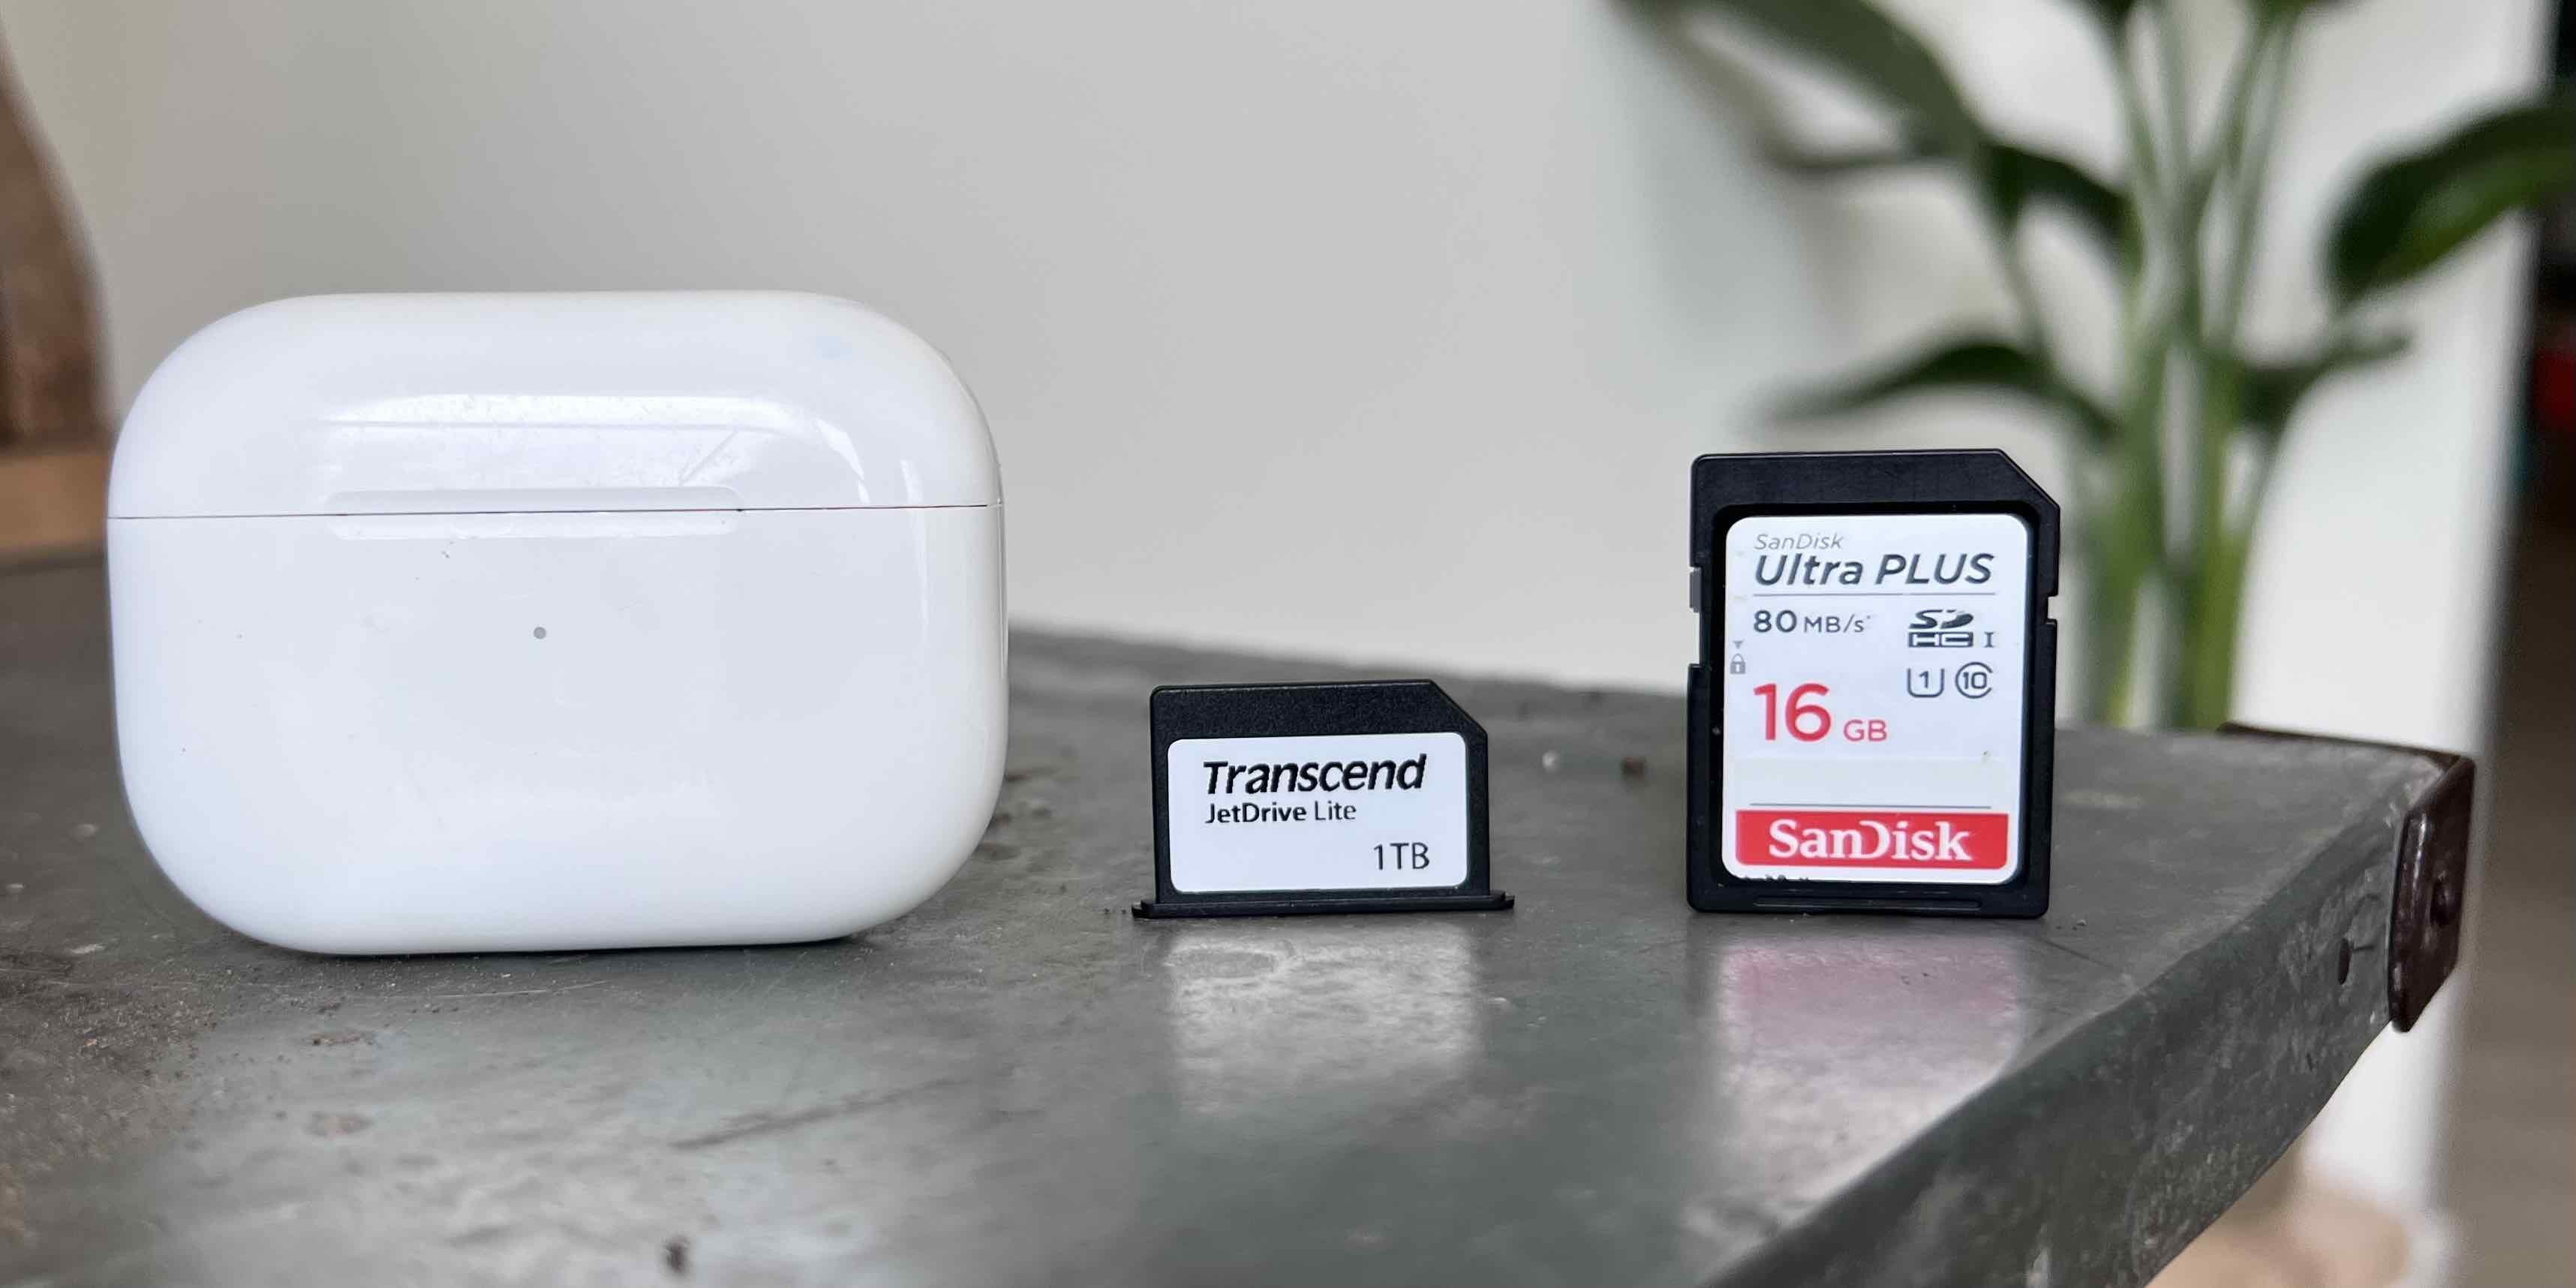 MacBook Pro flush SD card: Transcend JetDrive 330 size